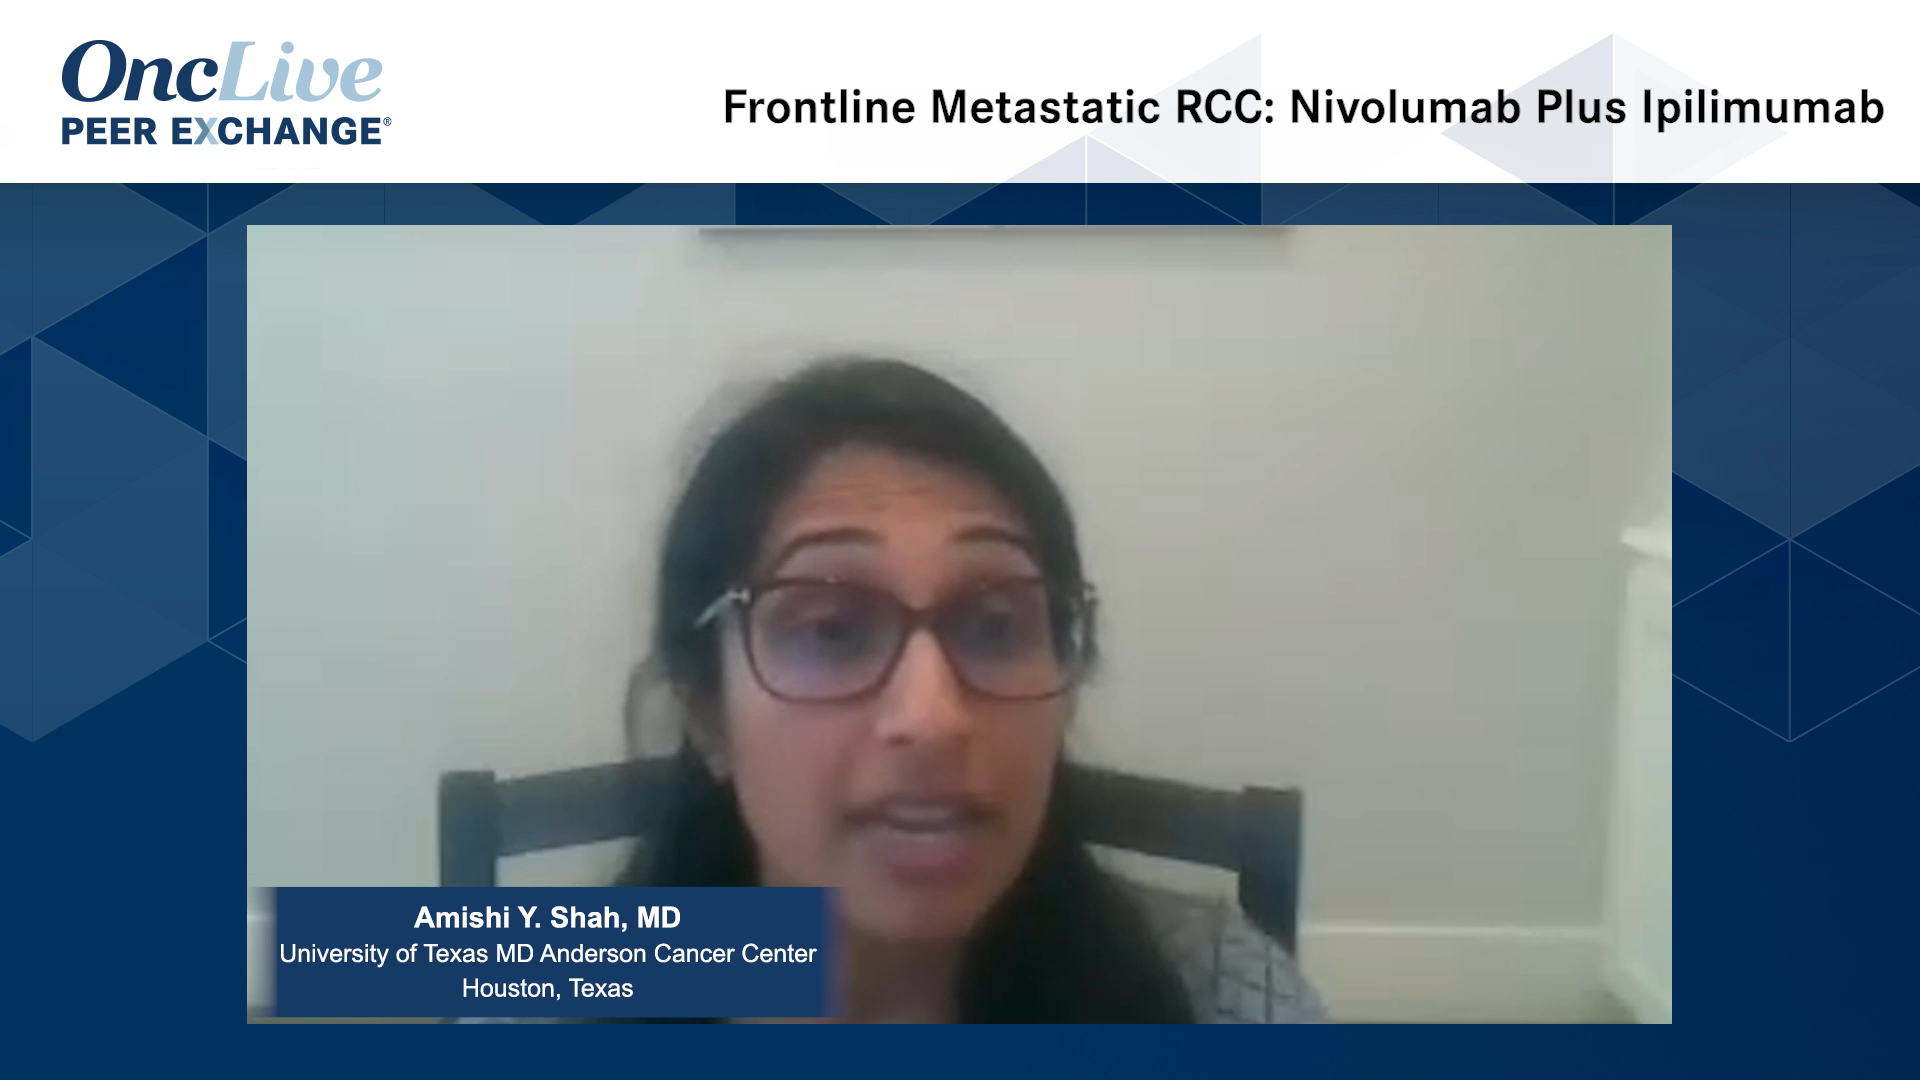 Frontline Metastatic RCC: Nivolumab Plus Ipilimumab